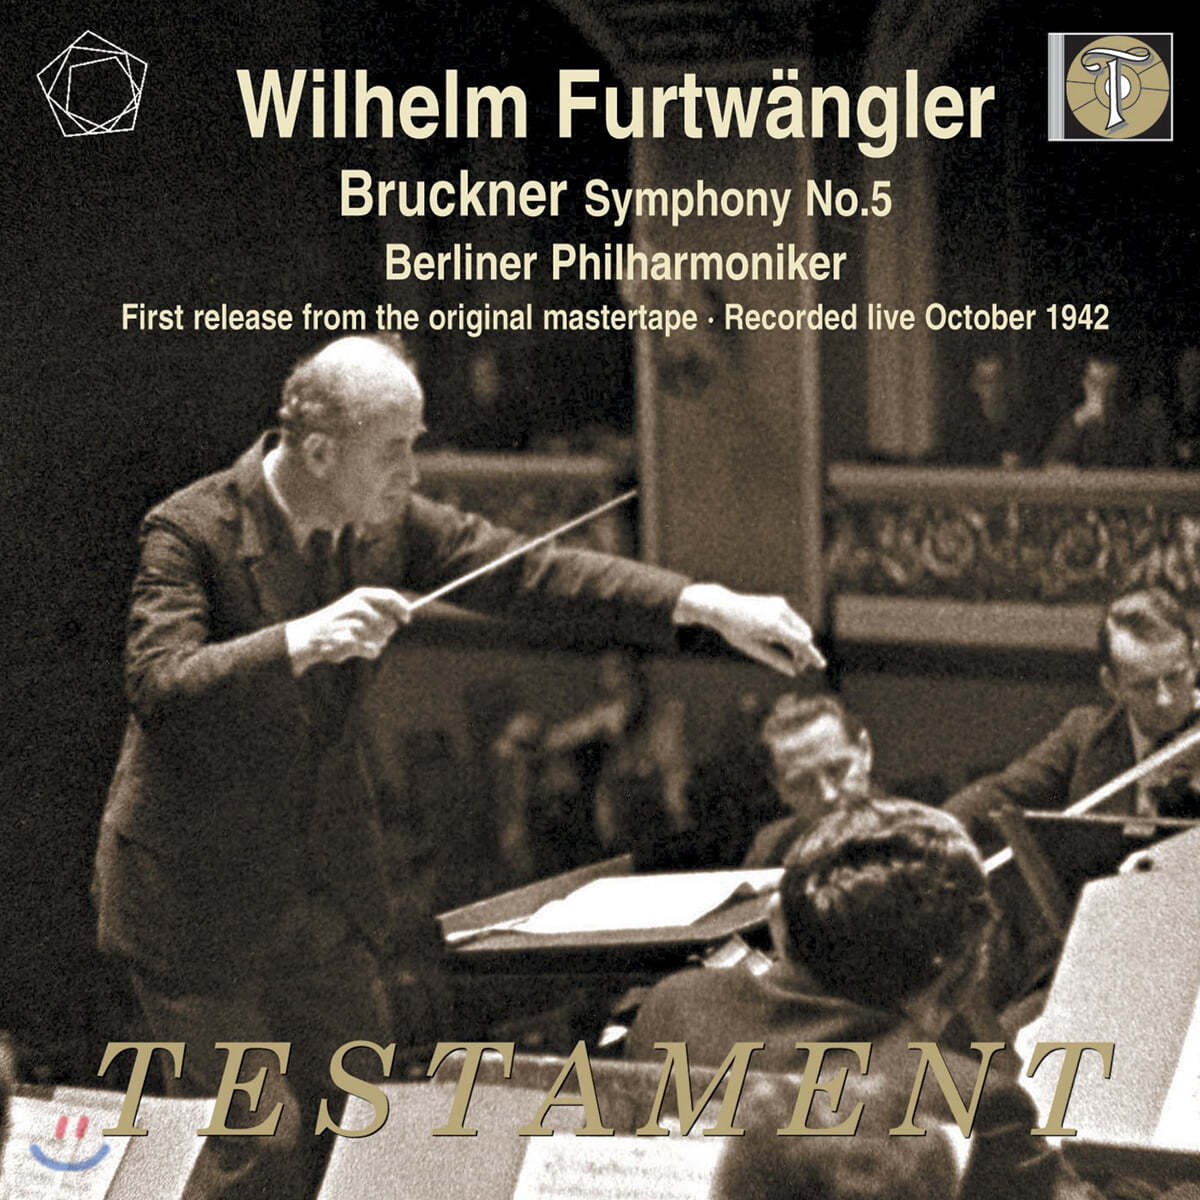 Wilhelm Furtwangler 브루크너: 교향곡 5번 (Bruckner: Symphony No.5) 